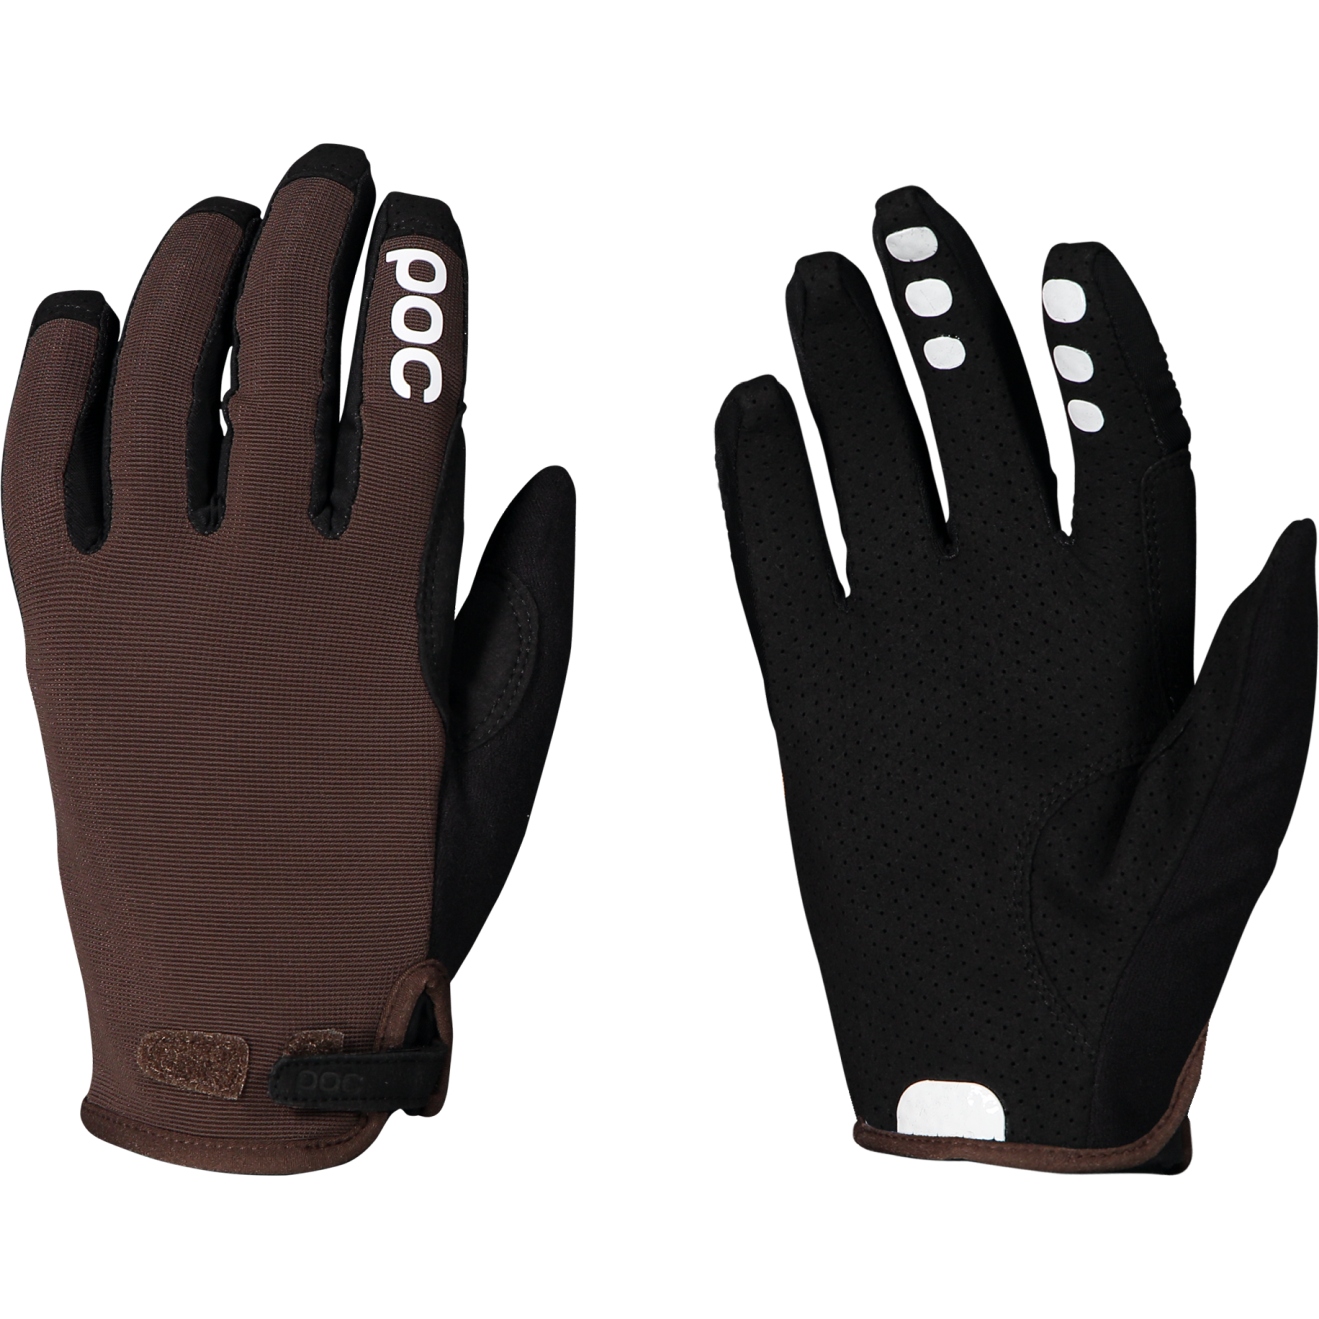 Produktbild von POC Resistance Enduro Adjustable Handschuhe - 1816 Axinite Brown